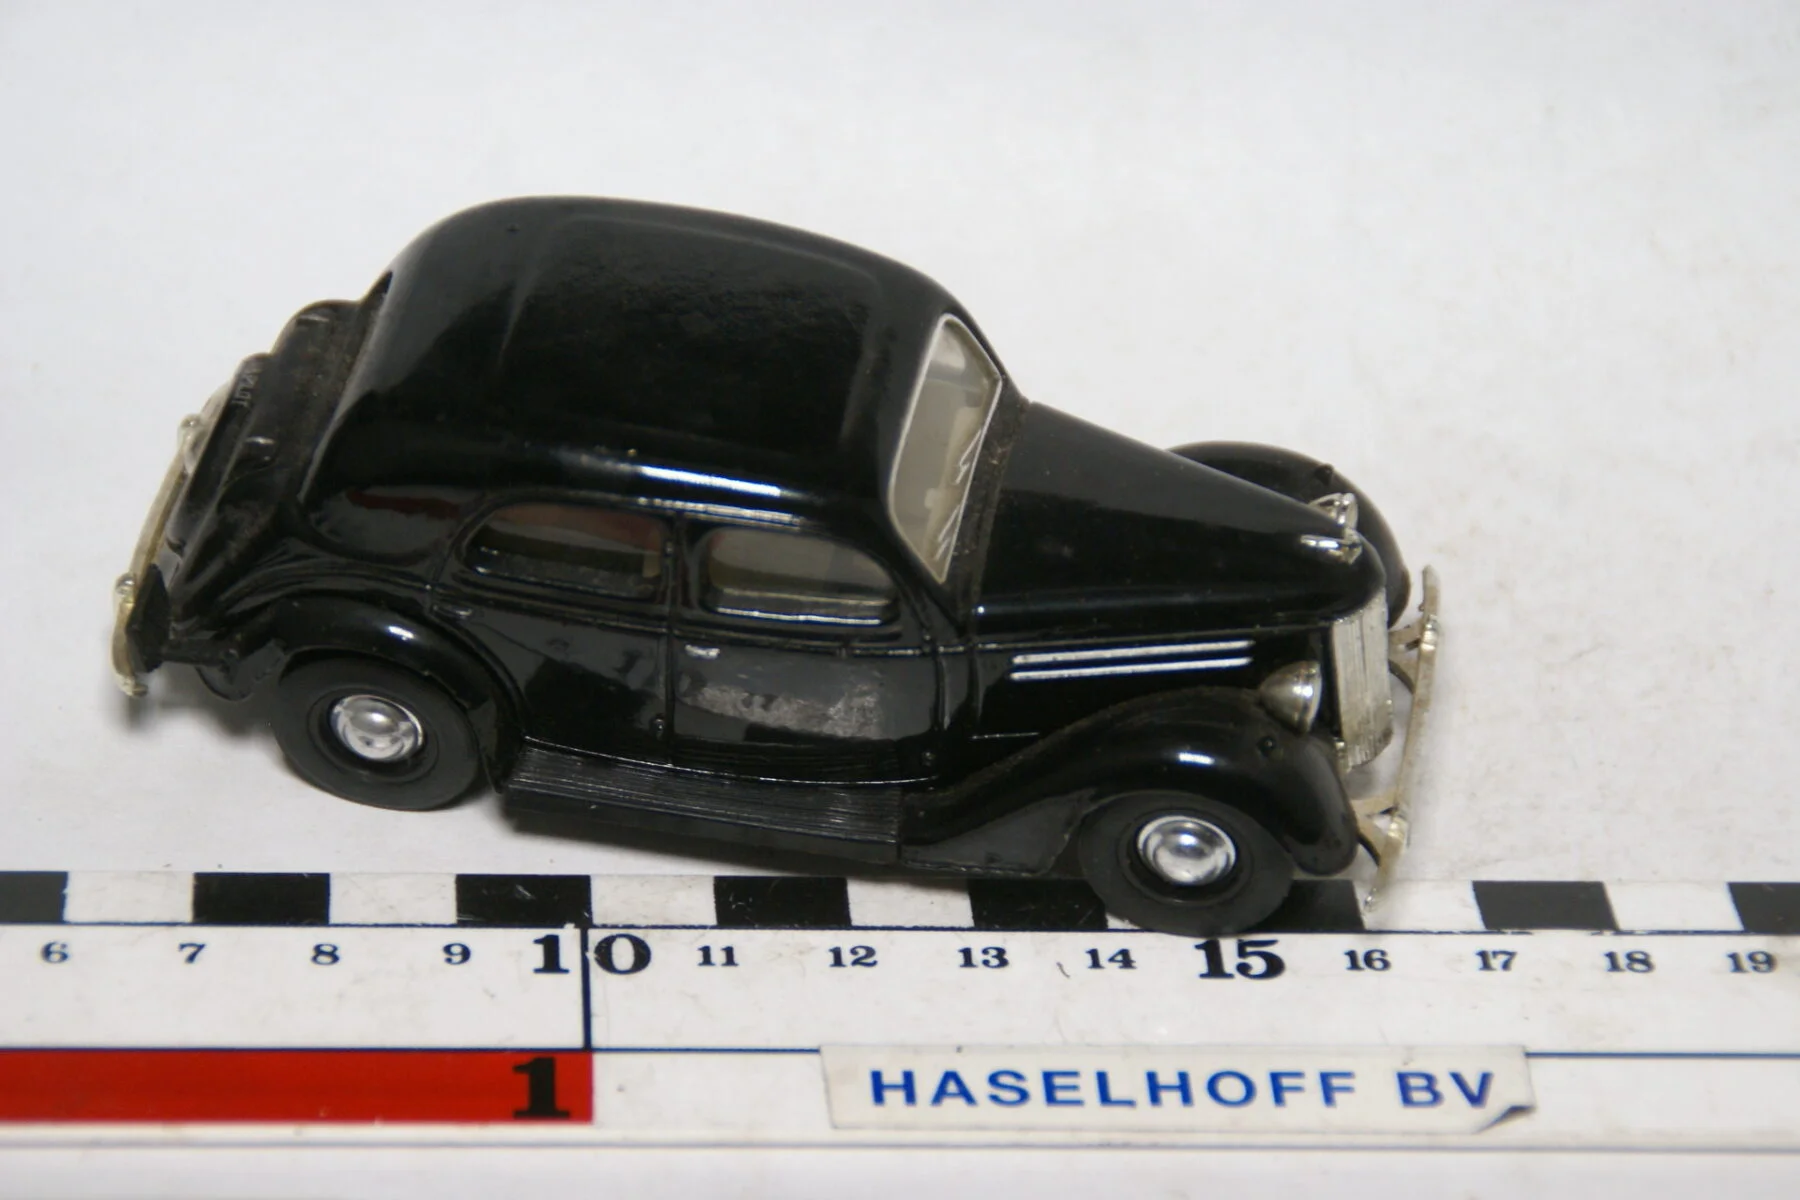 DSC07868 miniatuur 1949 Ford V8 zwart  ca 1op43 Matcbox Dinky mint